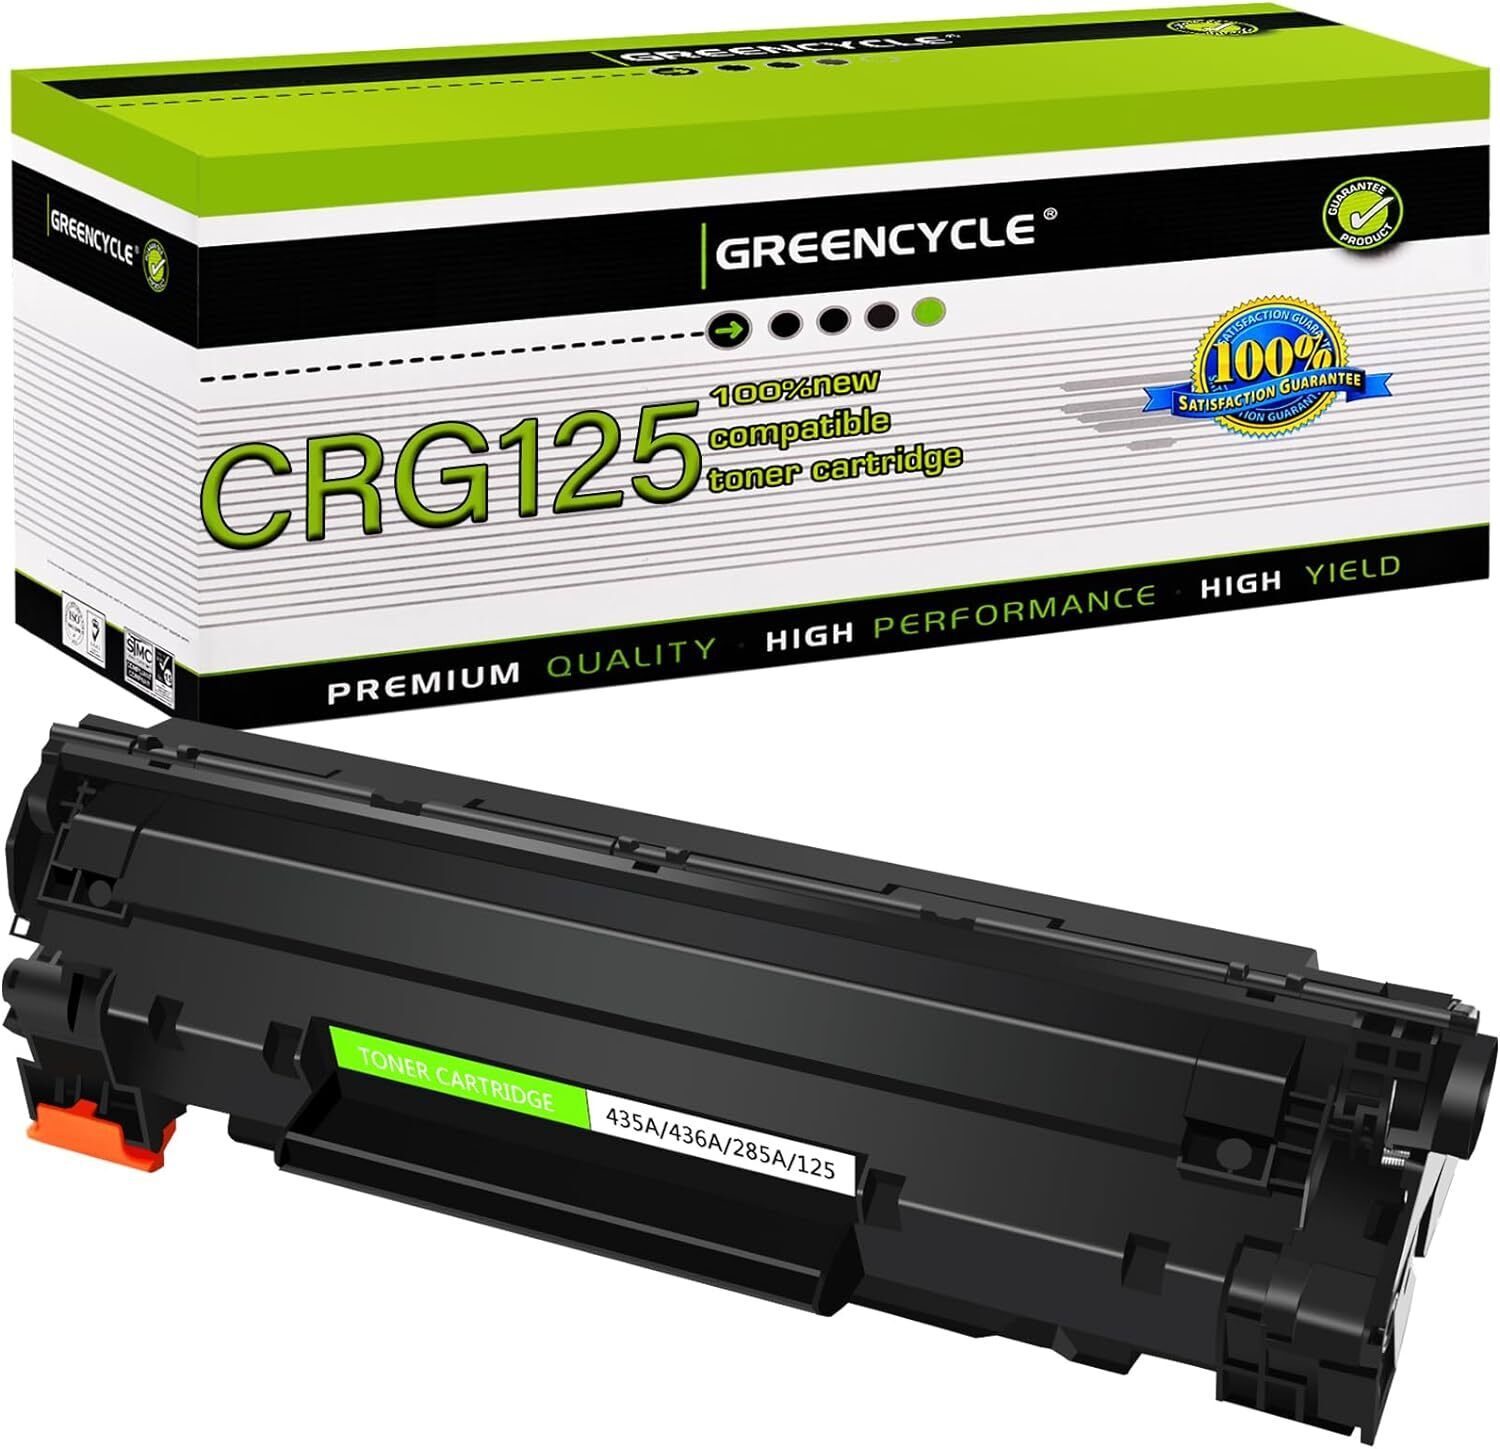 1PK Greencycle CRG125 Toner for Canon 125 imageCLASS LBP6020B, LBP6030, LBP6040